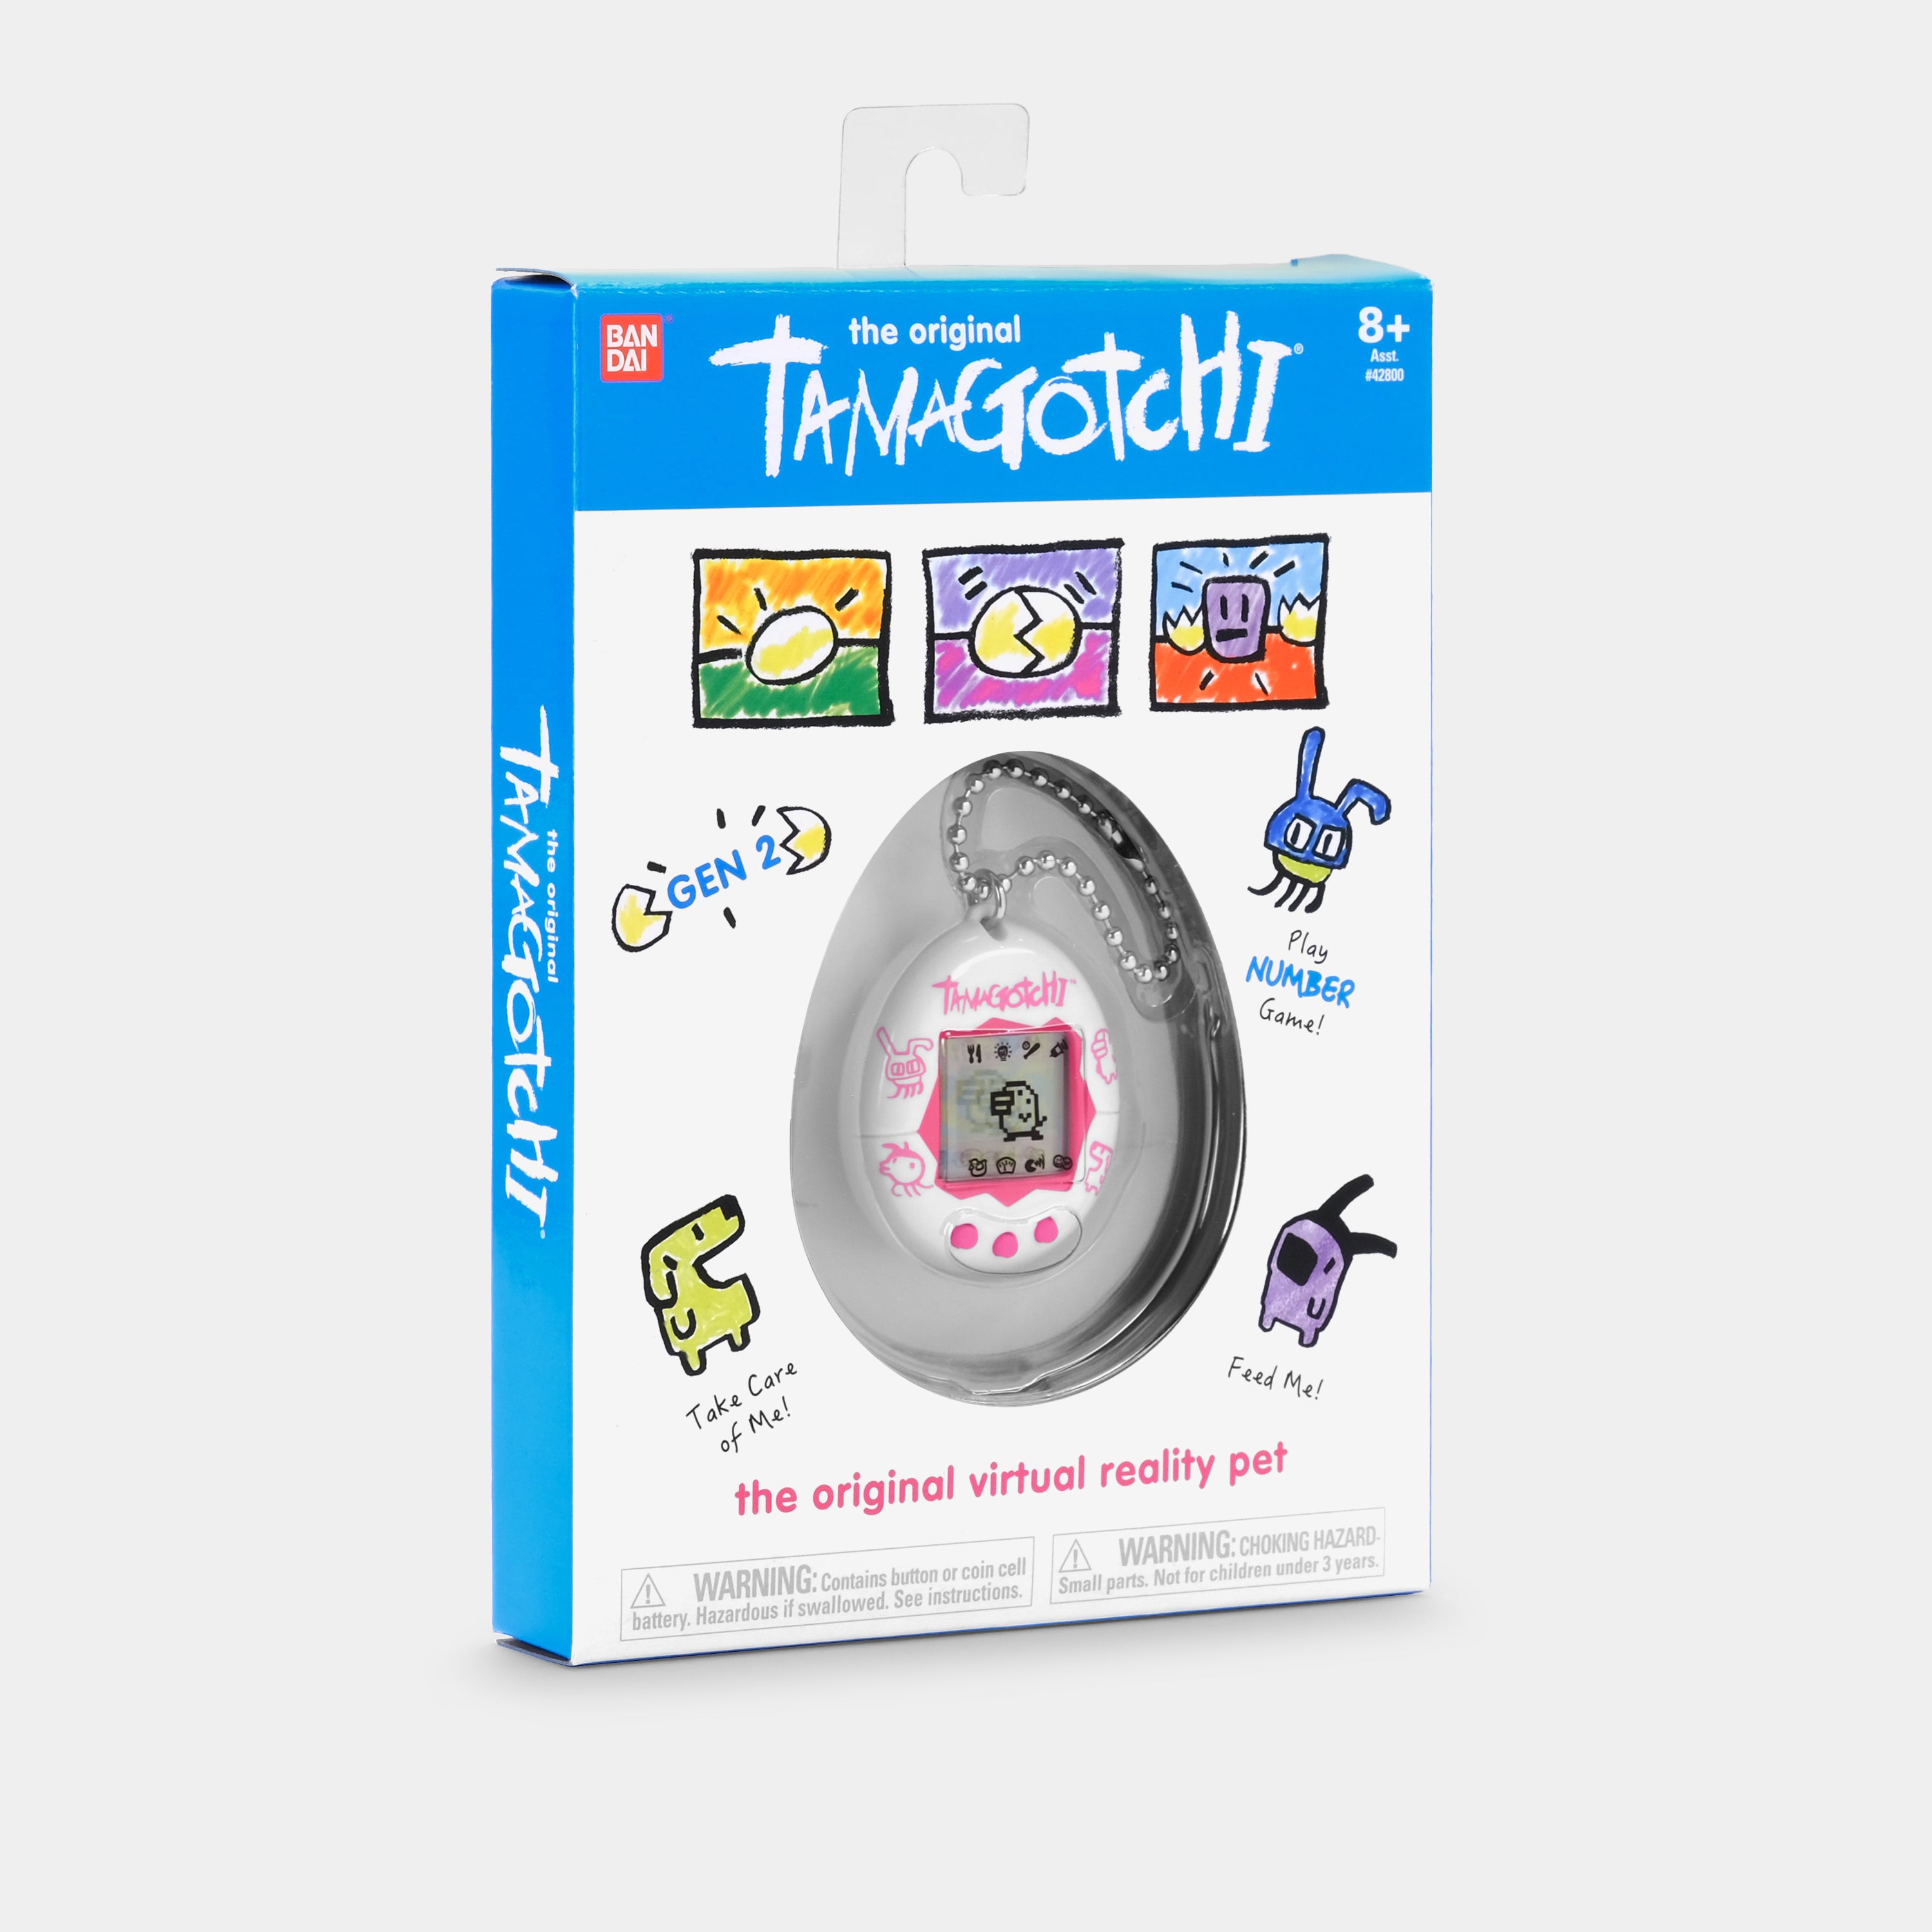 Original Tamagotchi (Gen. 2) White and Pink Virtual Pet